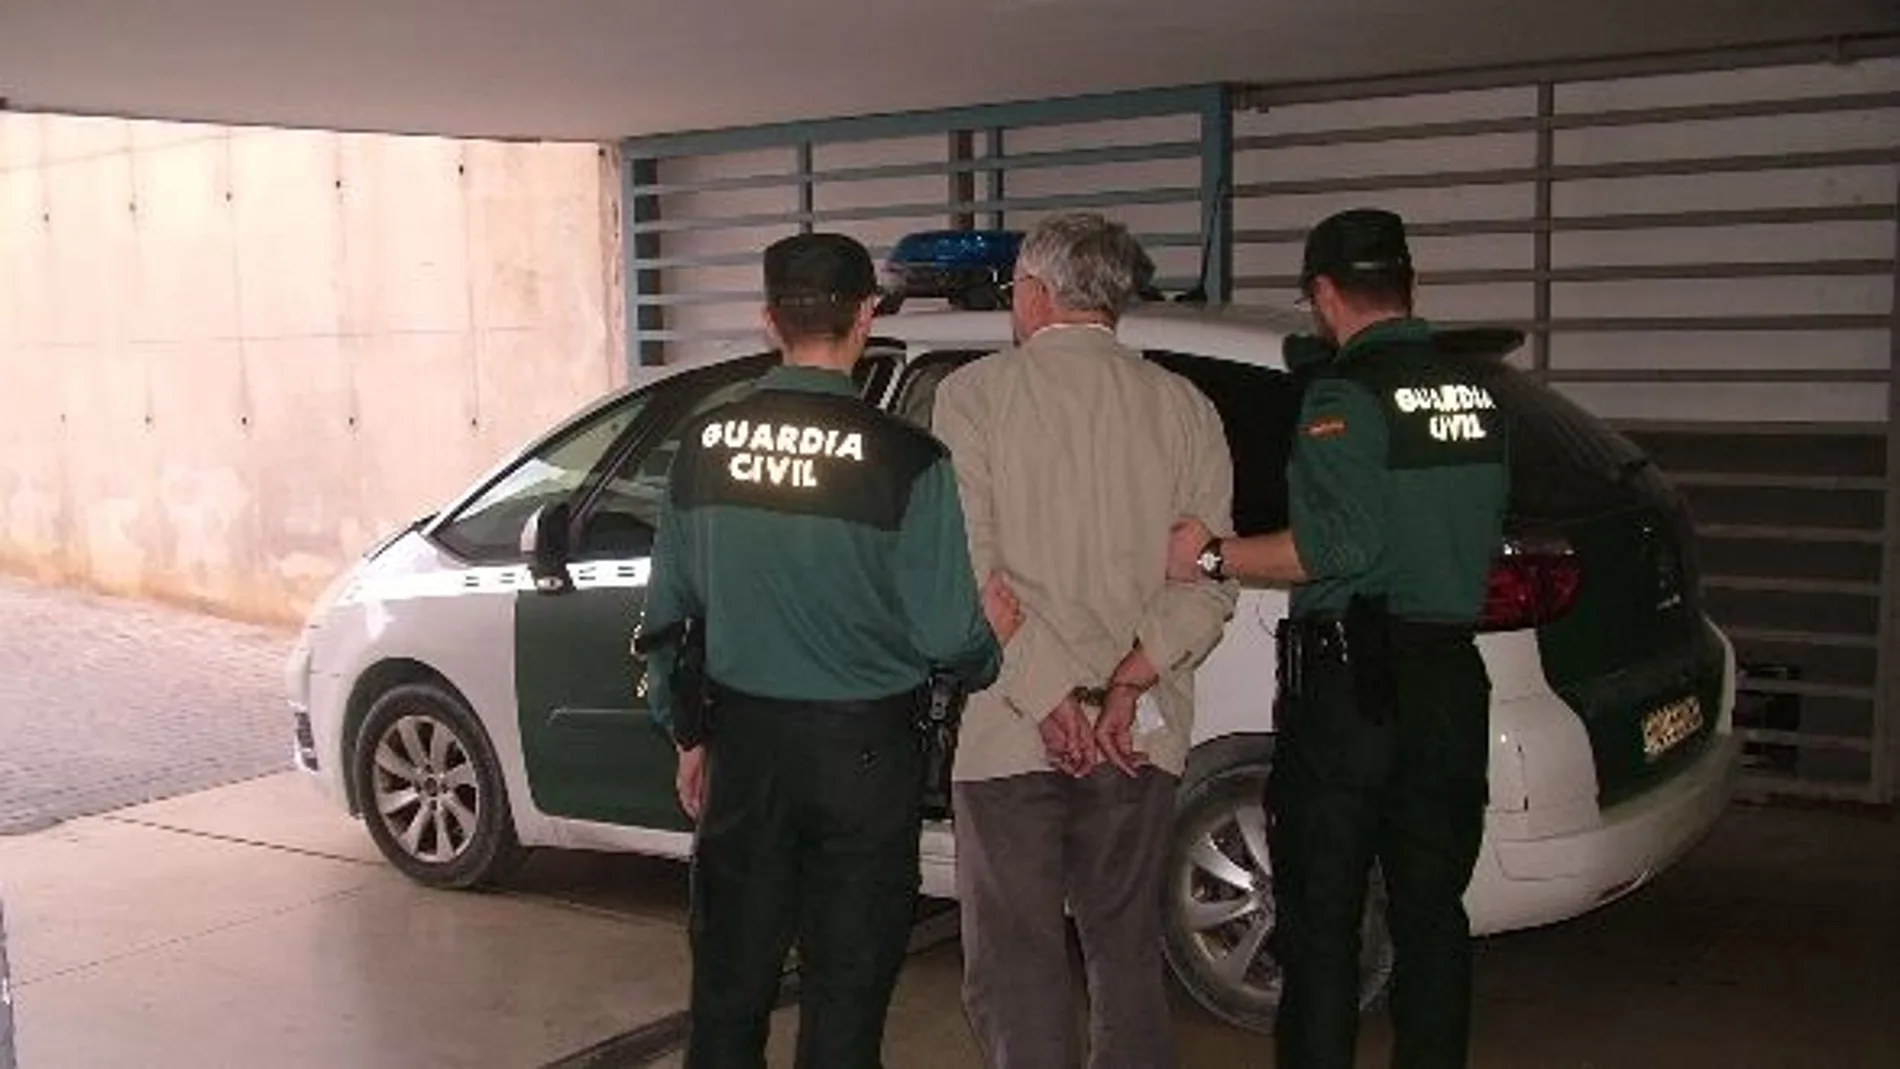 La detención se produjo en Alicante y ha sido extraditado a su país, donde se encuentra pendiente de ser condenado a prisión.